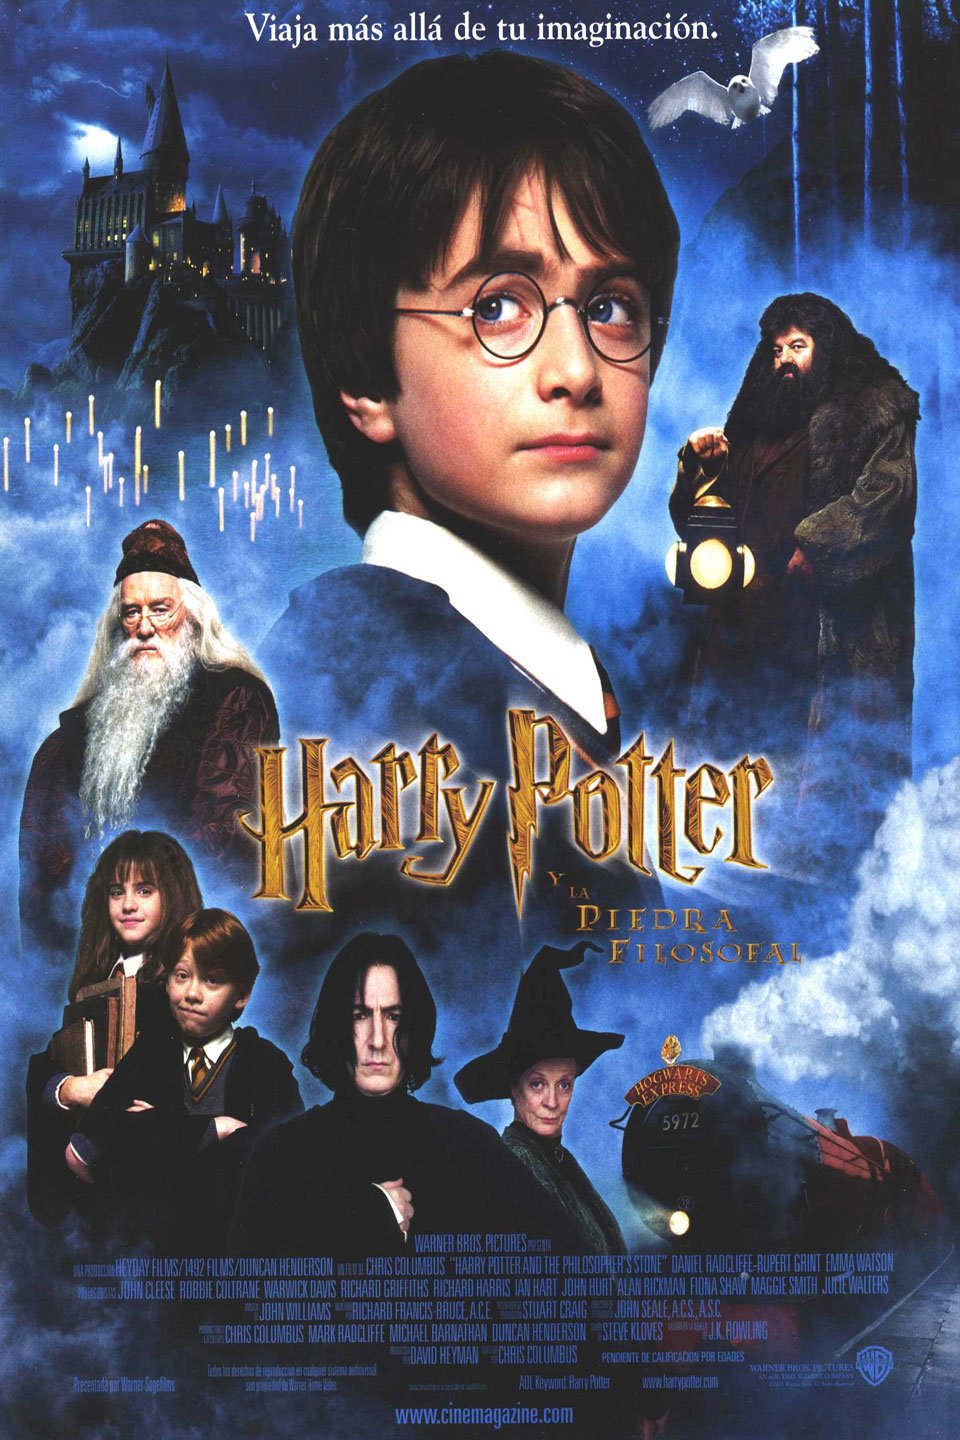 Moral Noveno Contradicción Harry Potter y la Piedra Filosofal - Película 2001 - SensaCine.com